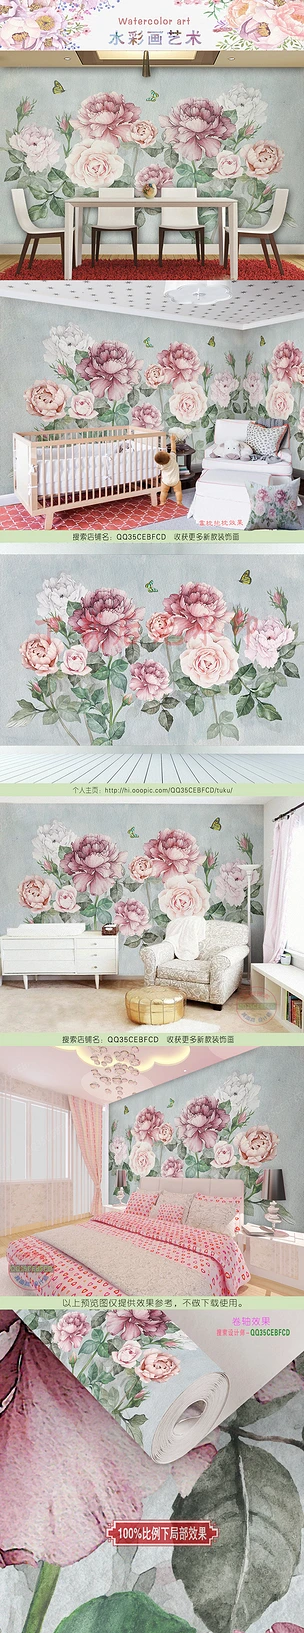 玫瑰花壁纸壁画